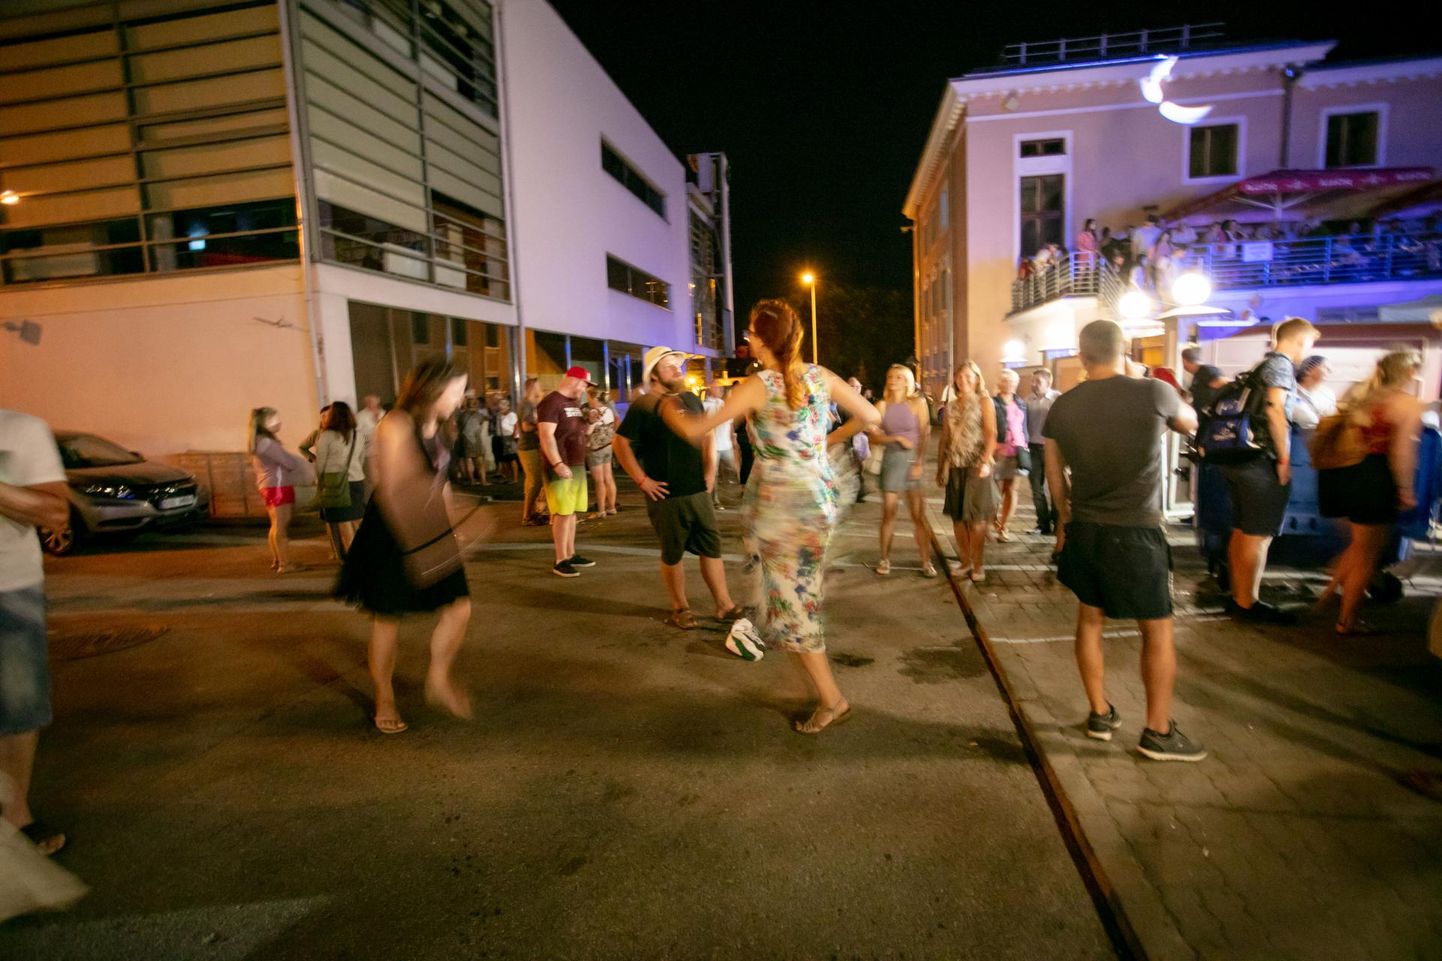 Pärimusmuusika festivali ajal võib ka öösiti näha inimesi tänavatel peomelu nautimas.